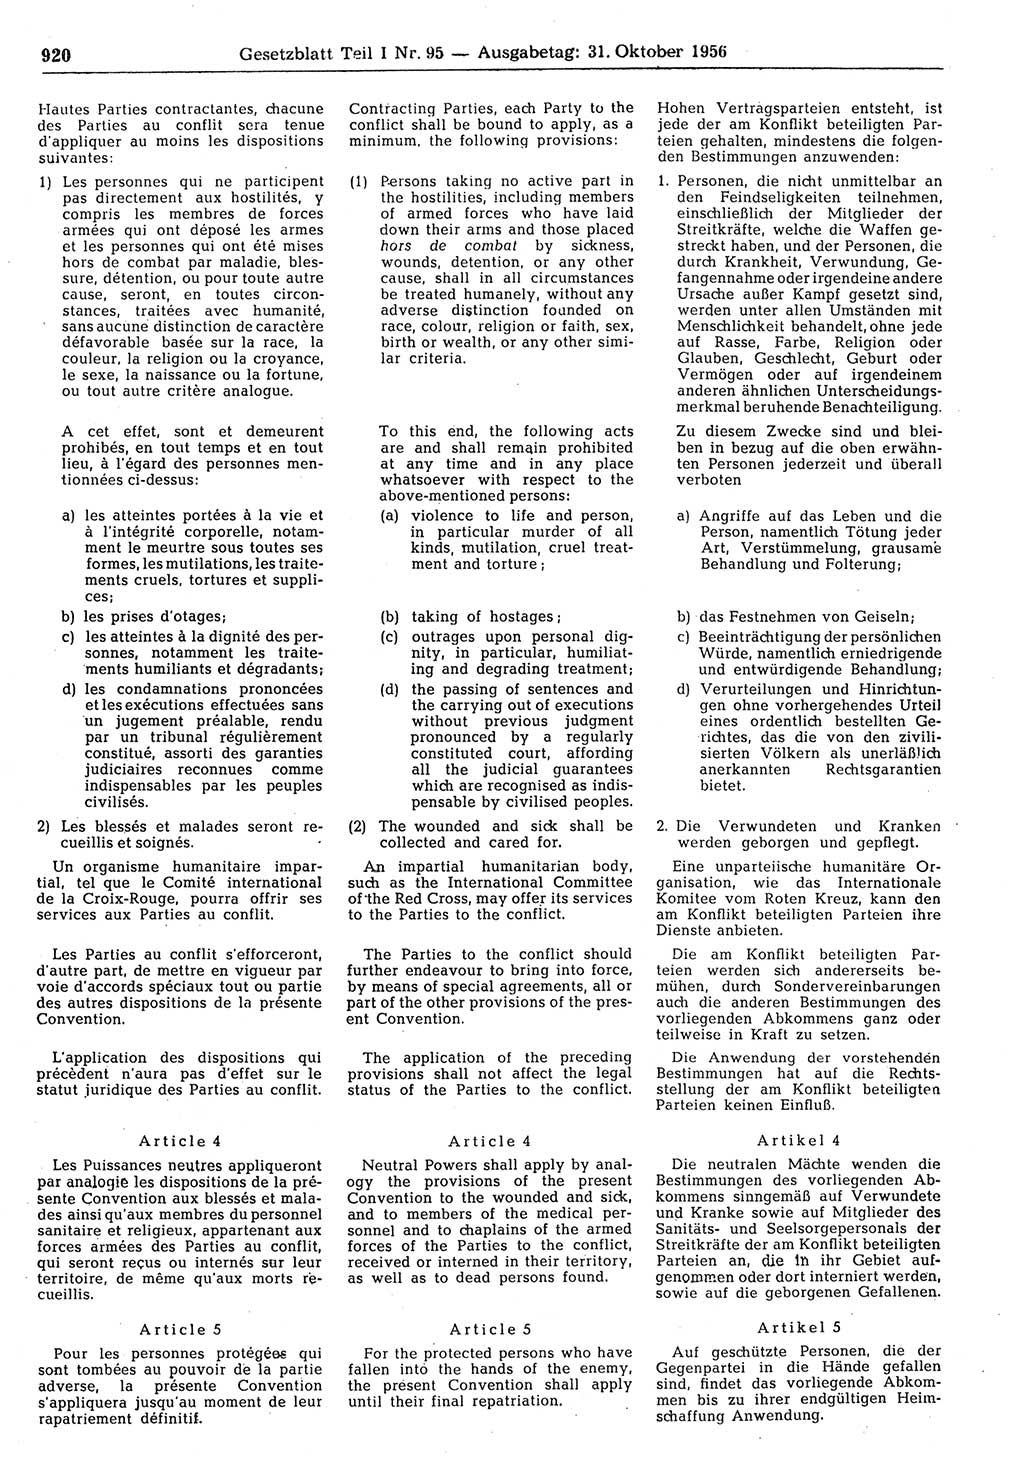 Gesetzblatt (GBl.) der Deutschen Demokratischen Republik (DDR) Teil Ⅰ 1956, Seite 920 (GBl. DDR Ⅰ 1956, S. 920)